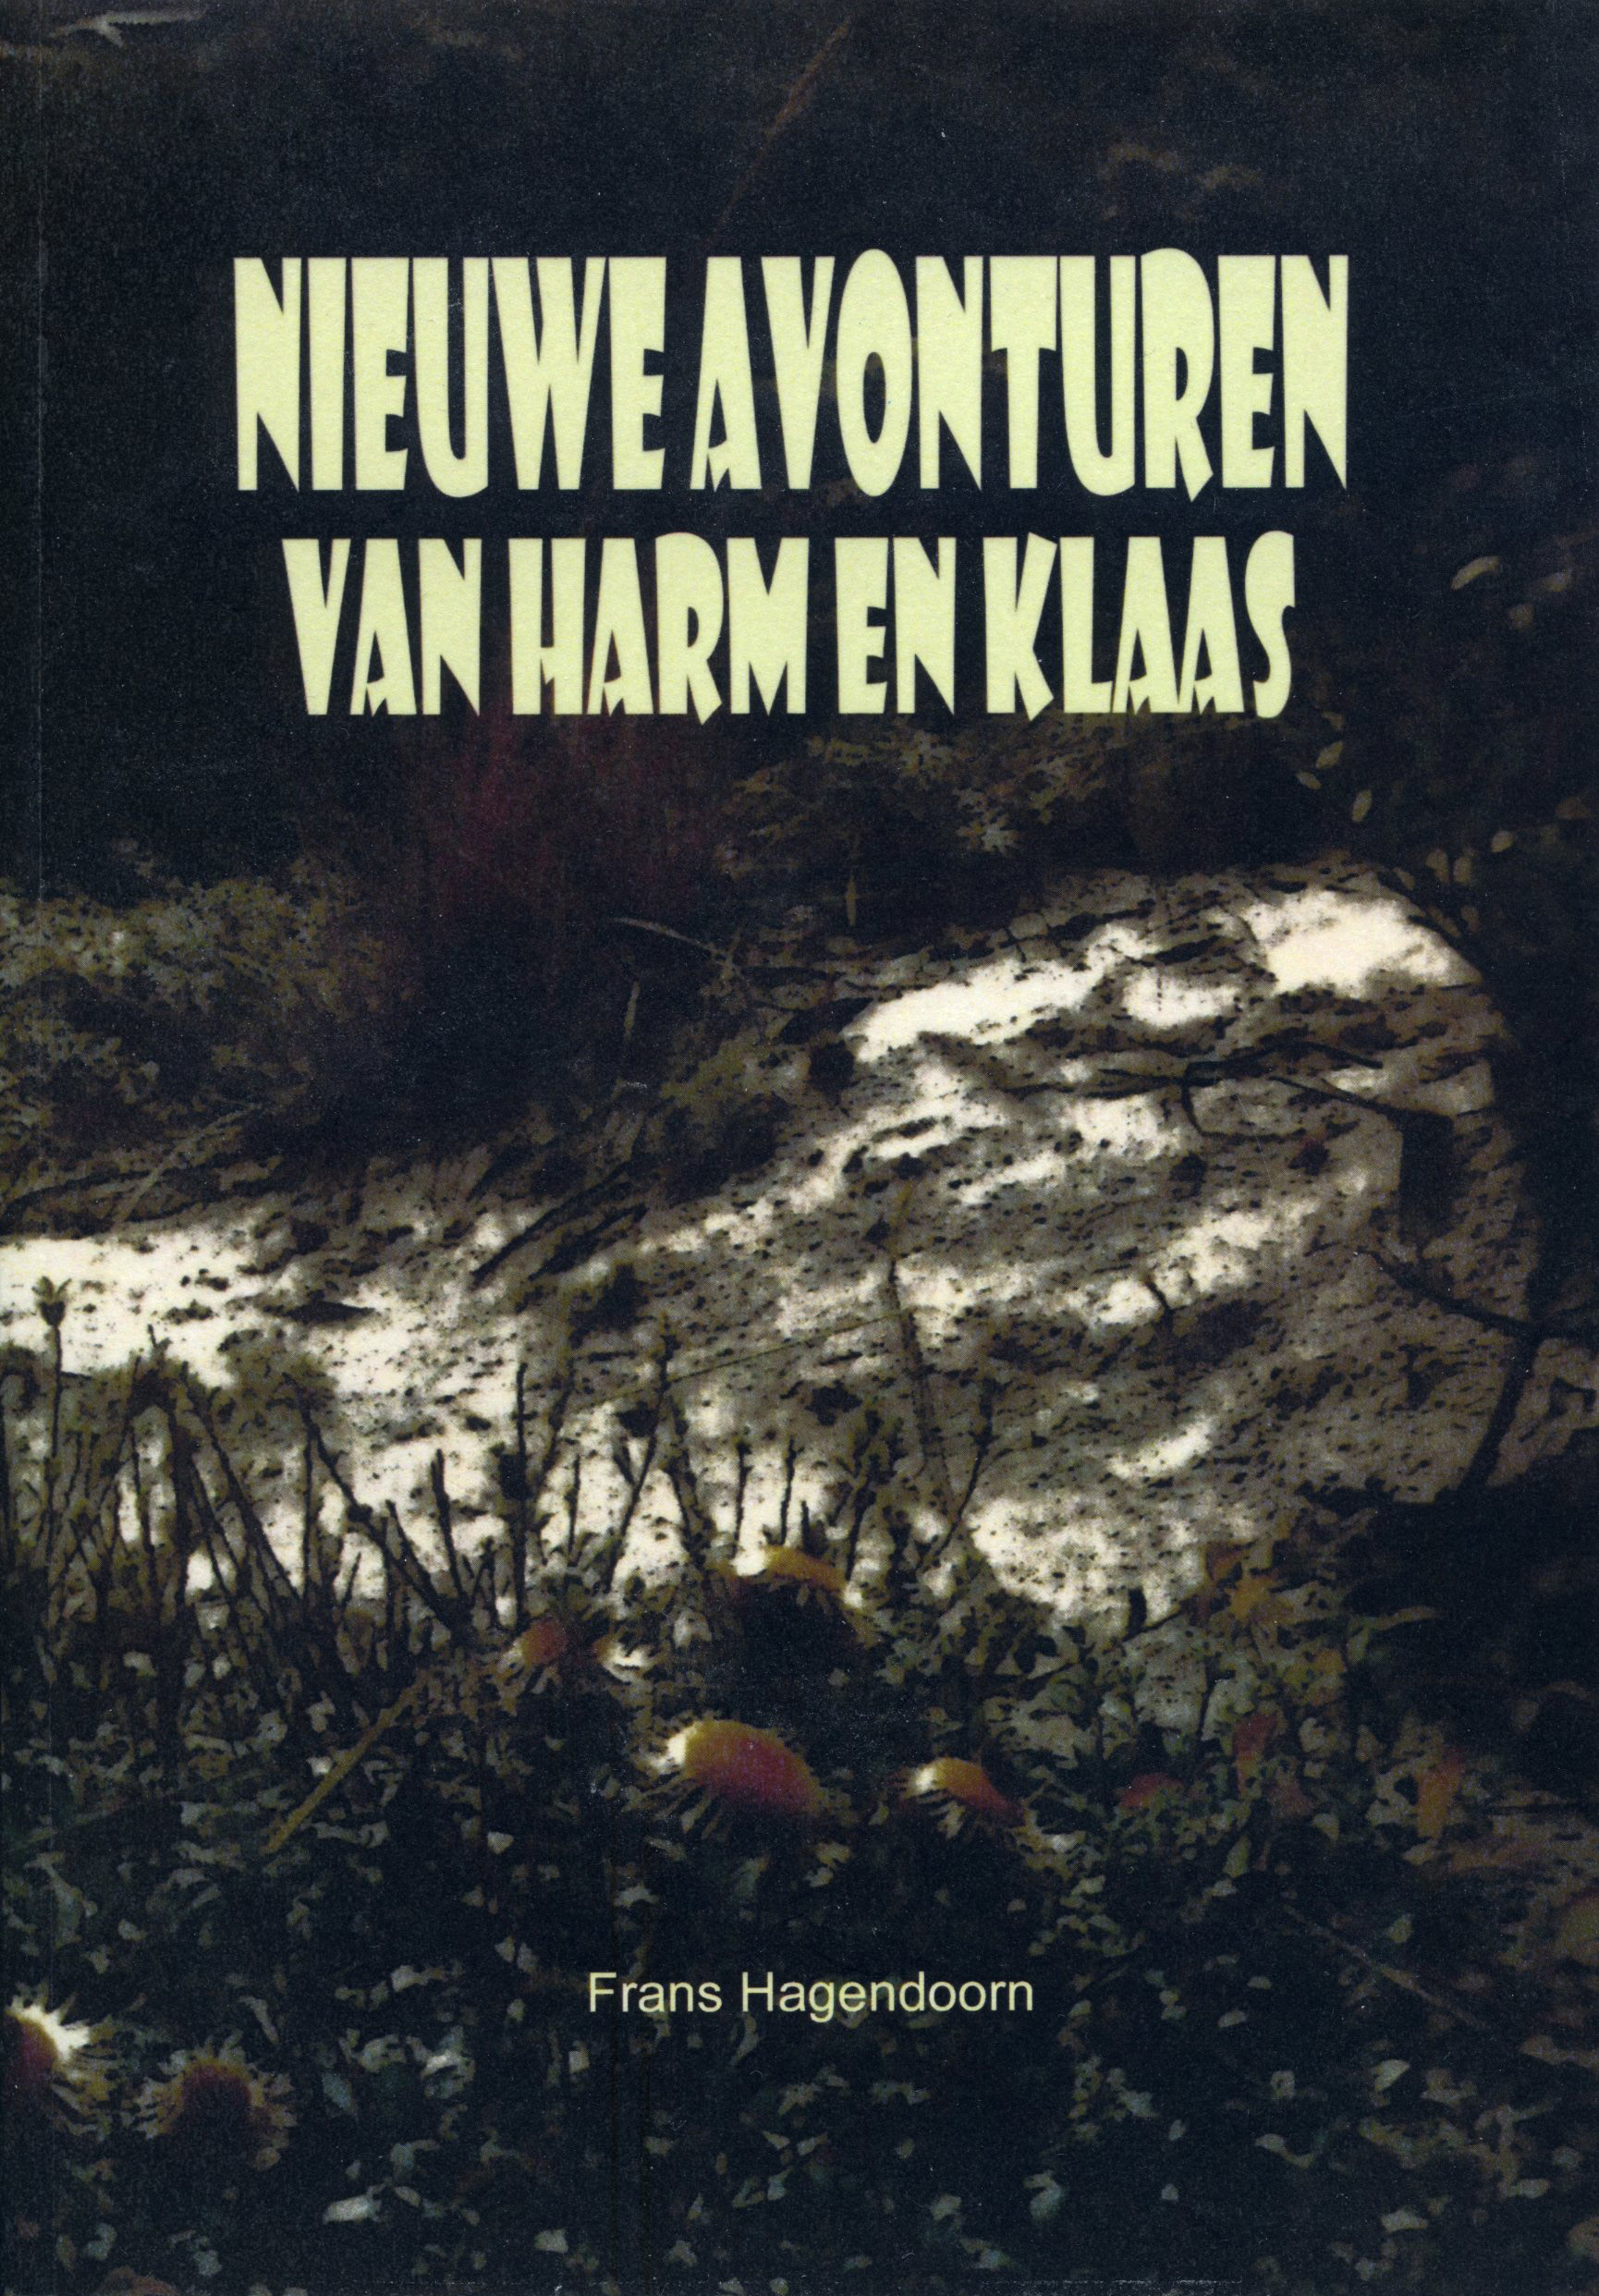 NIEUWE AVONTUREN VAN HARM EM KLAAS, door FRANS HAGENDOORN